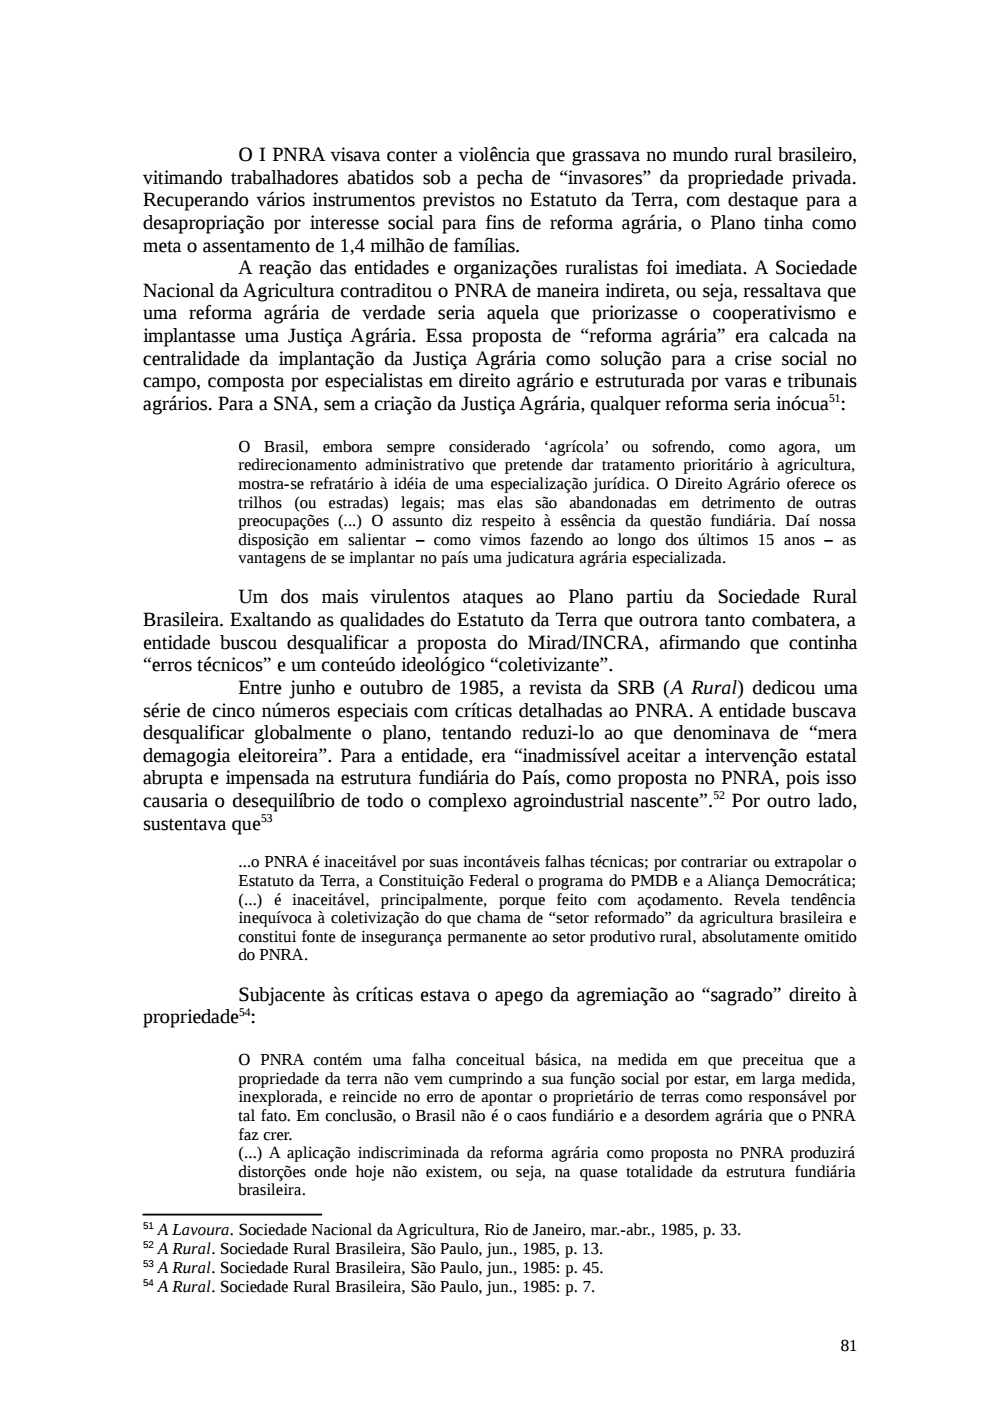 Page 81 from Relatório final da comissão